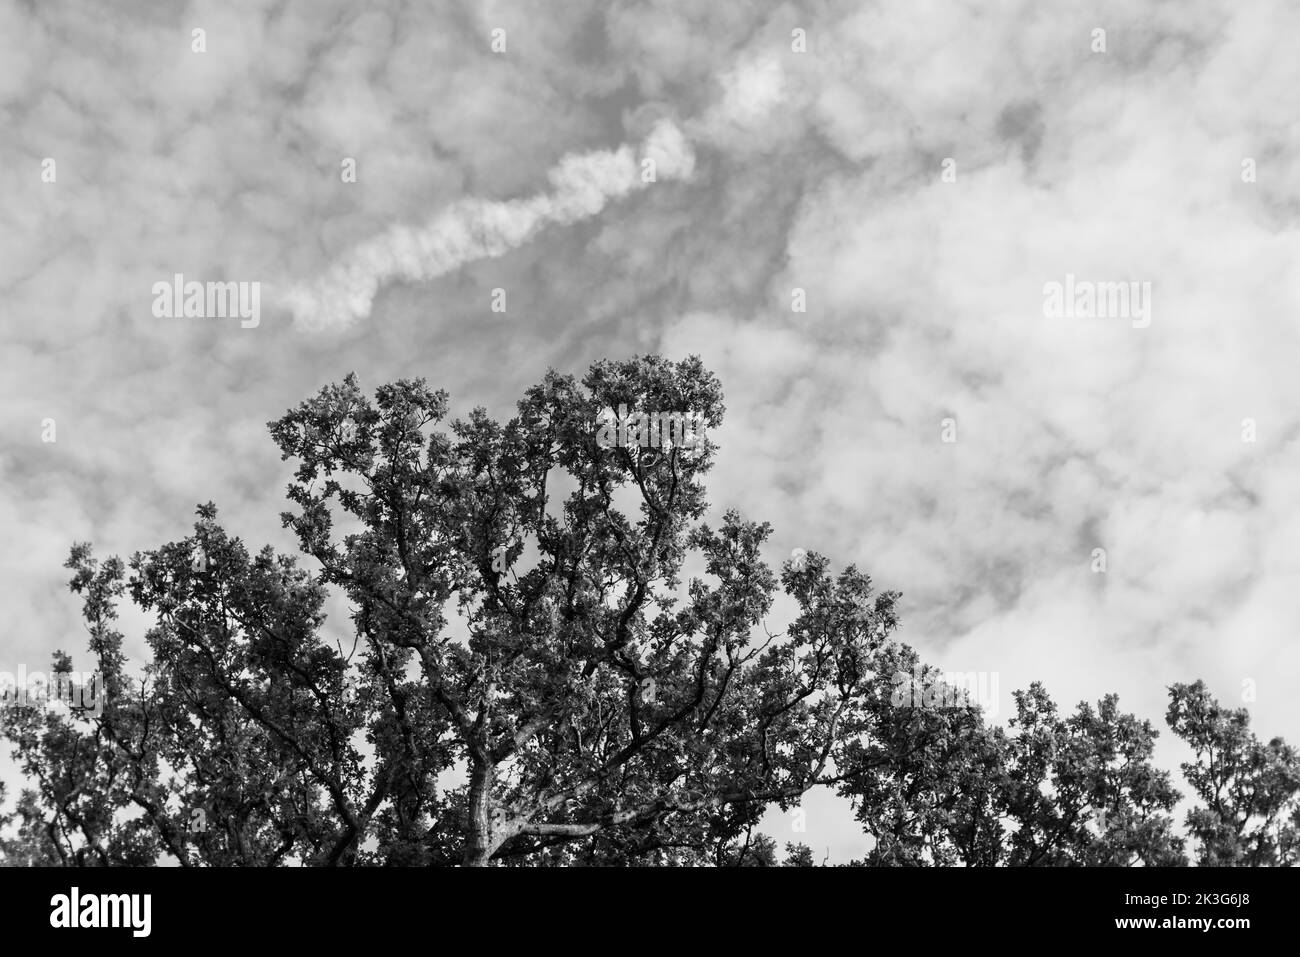 Ein blauer Herbst-/Sommerhimmel voller kleiner weißer, flauschiger Wolken mit den Gipfeln einheimischer Bäume (Eichen) Stockfoto